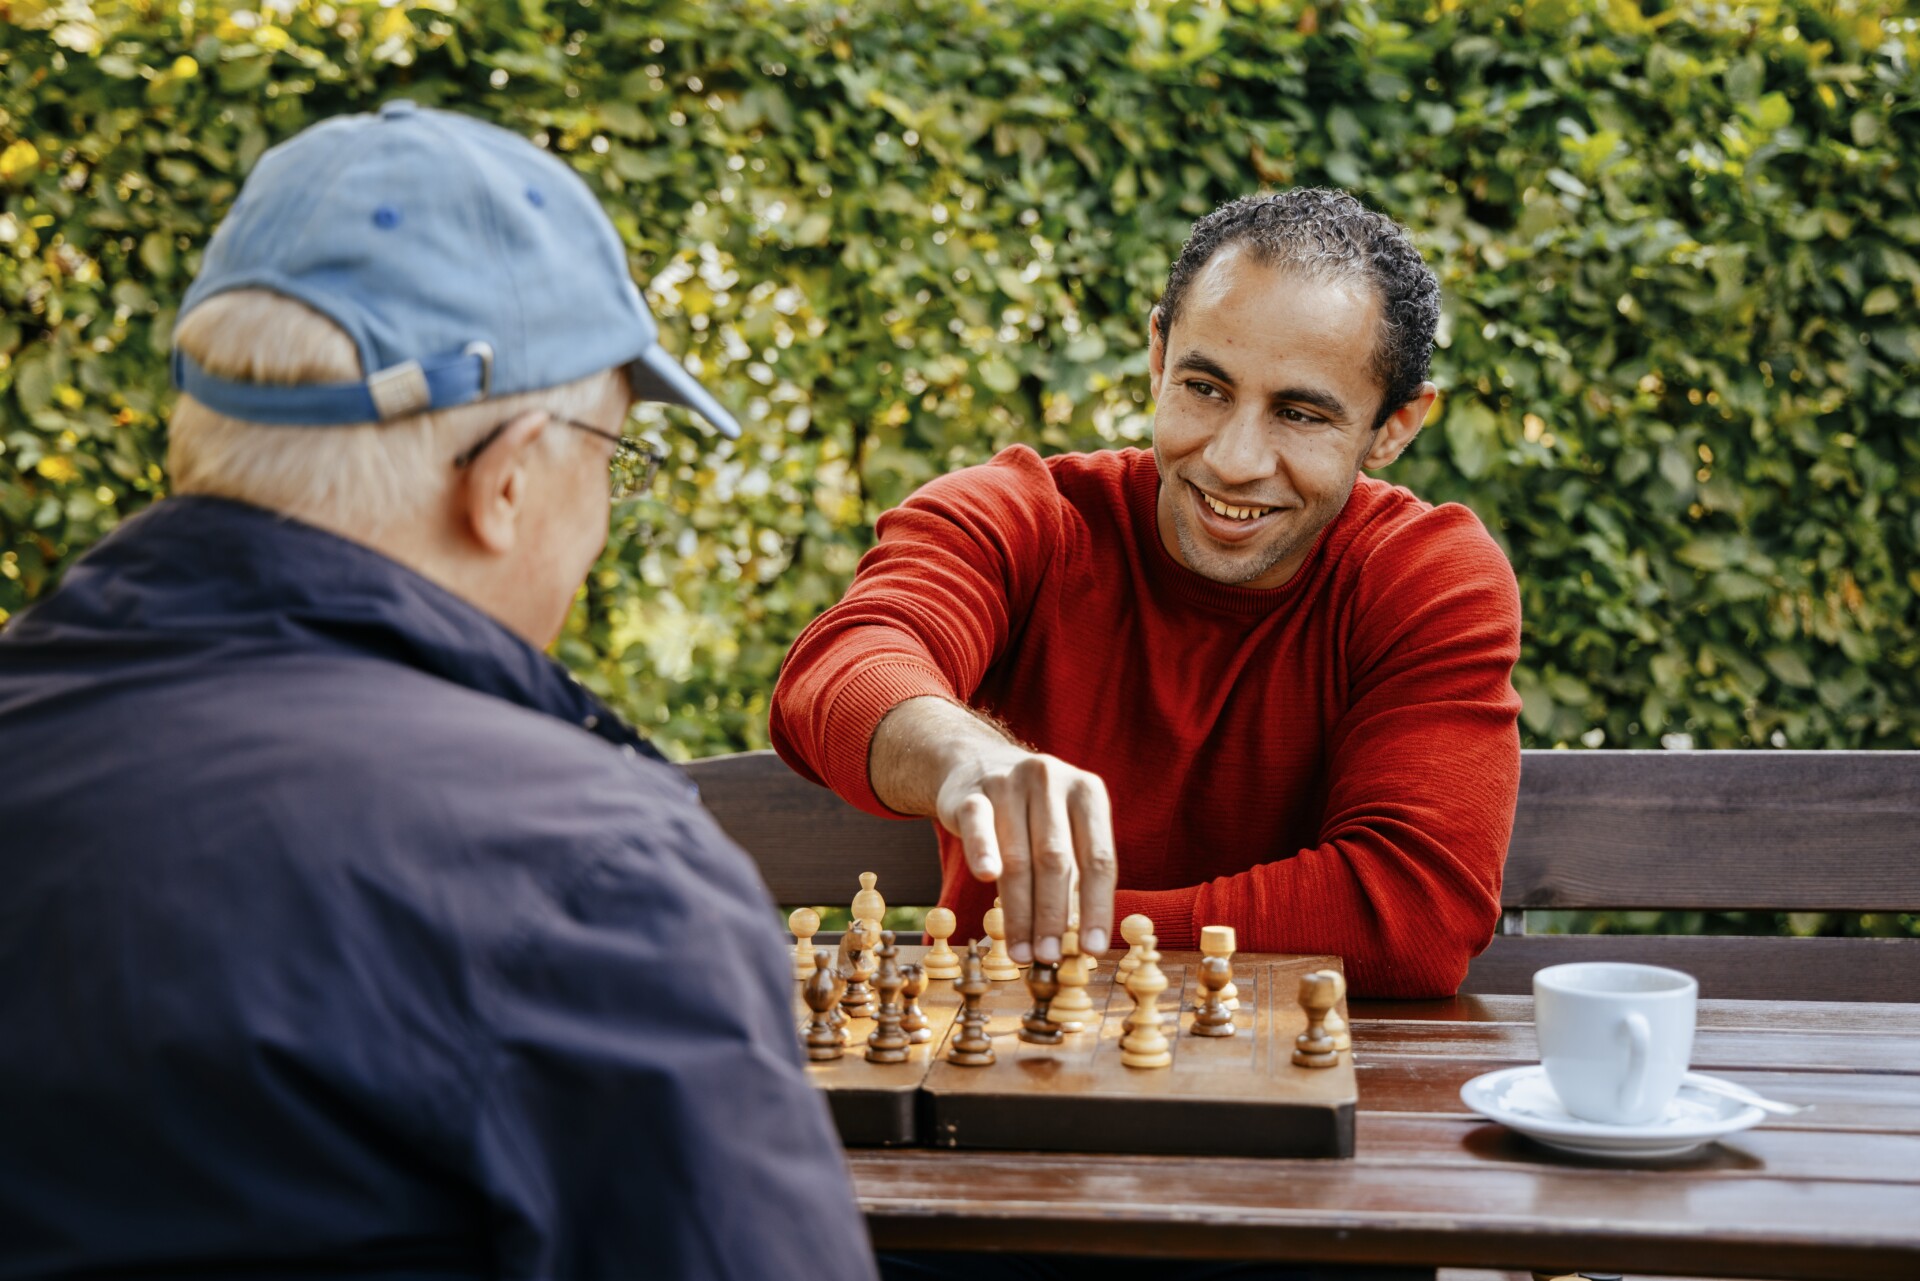 Foto: Zwei Menschen spielen Schach gemeinsam